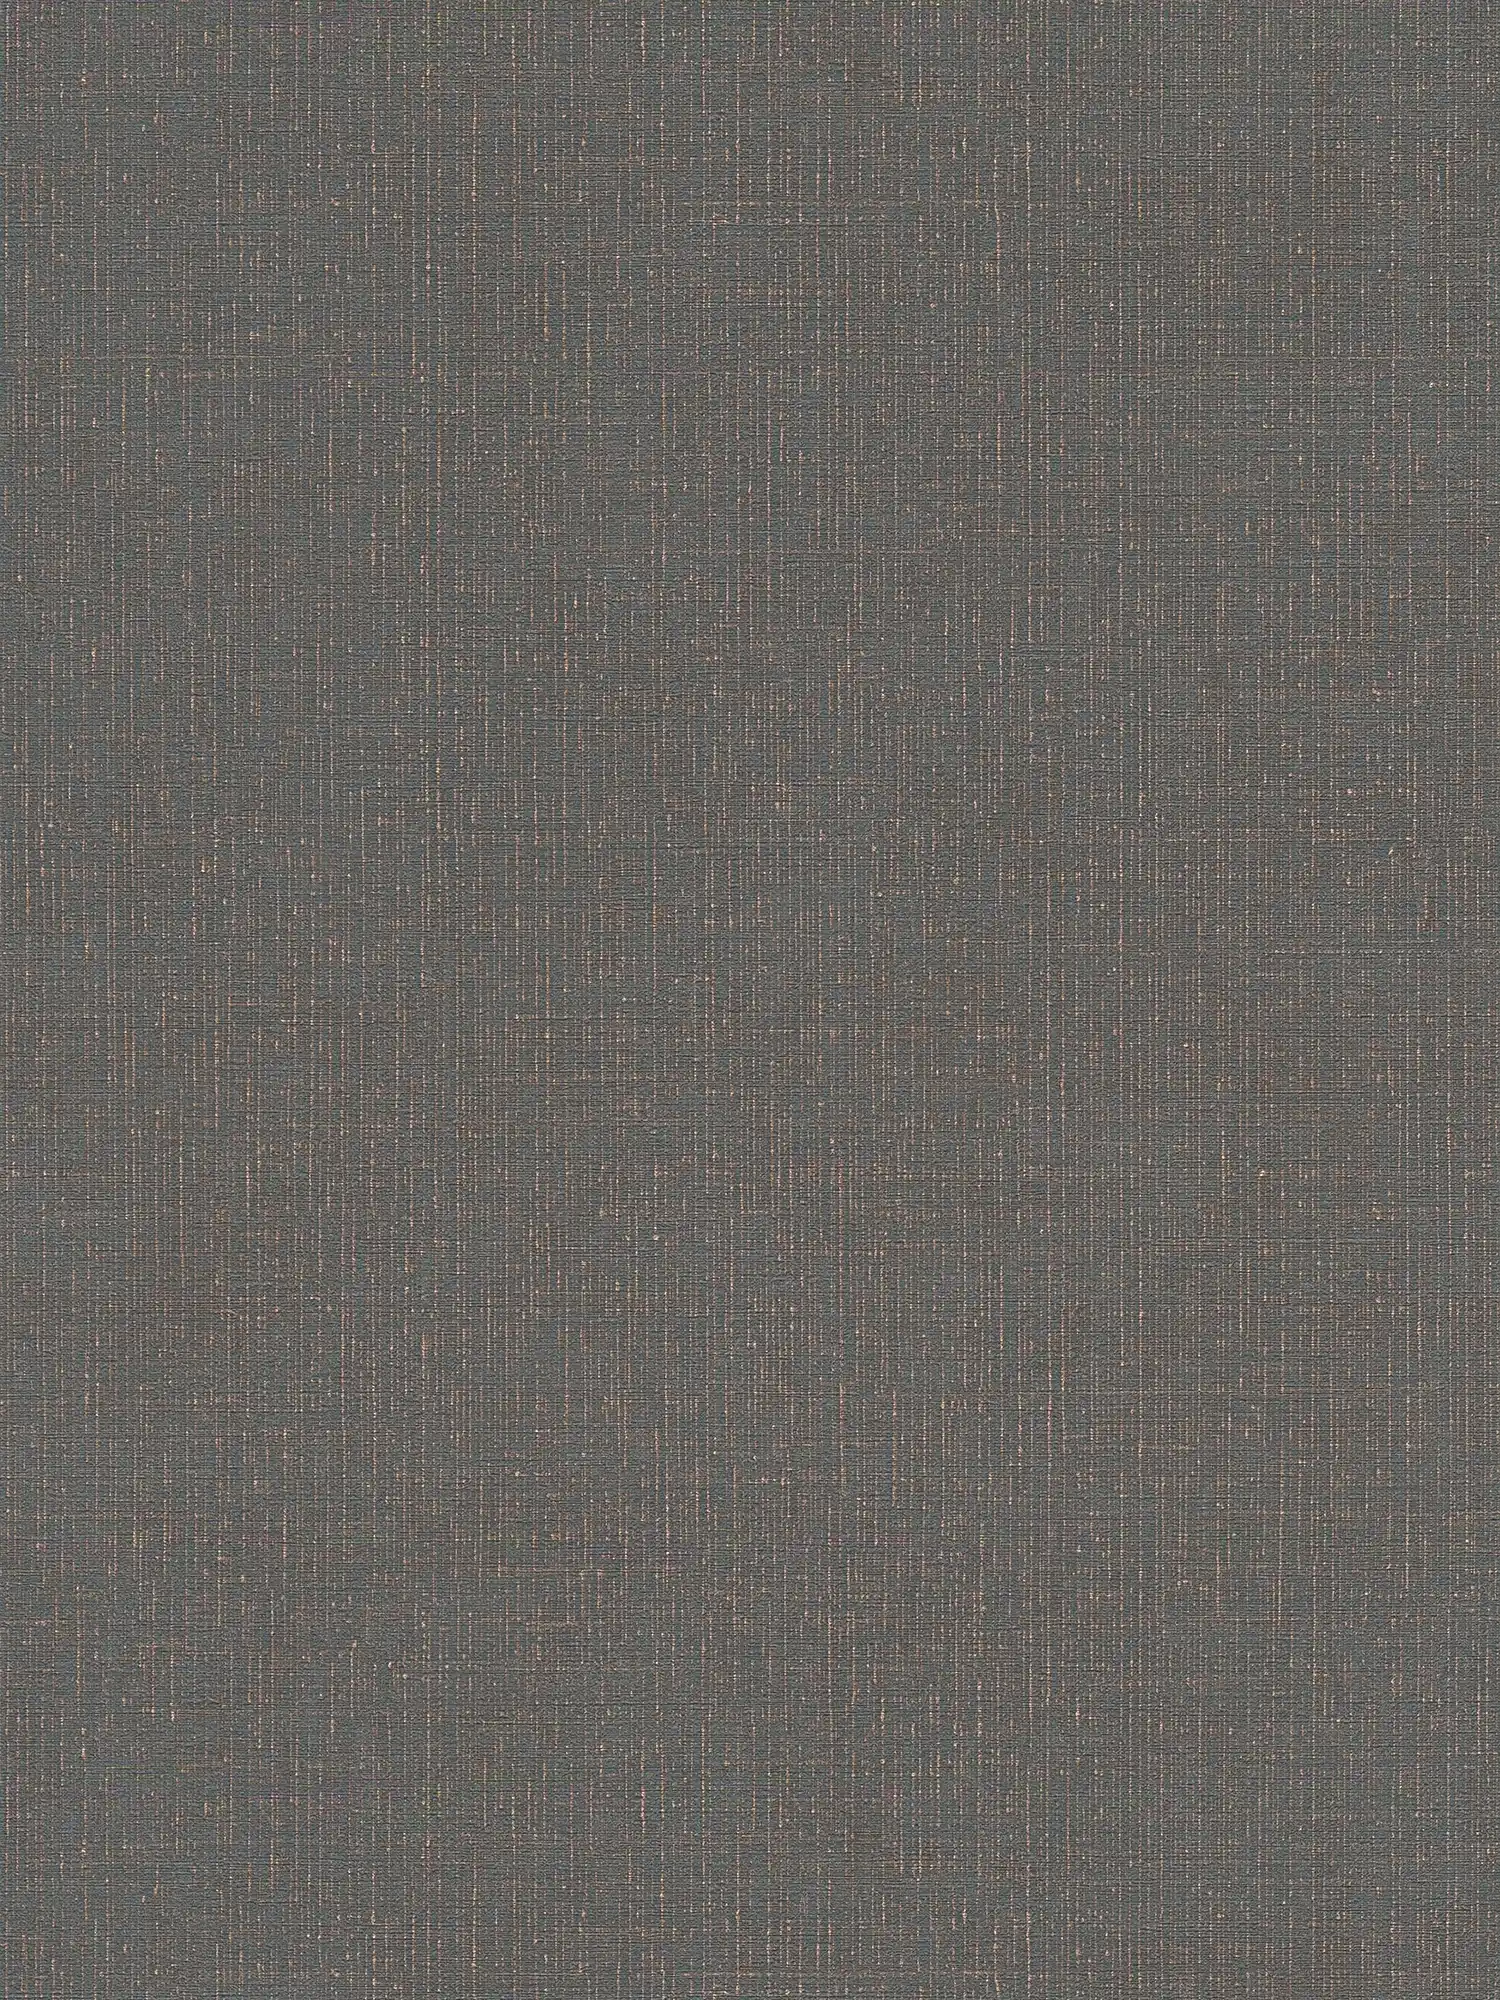 Papier peint aspect textile anthracite avec structure lin - noir, gris
